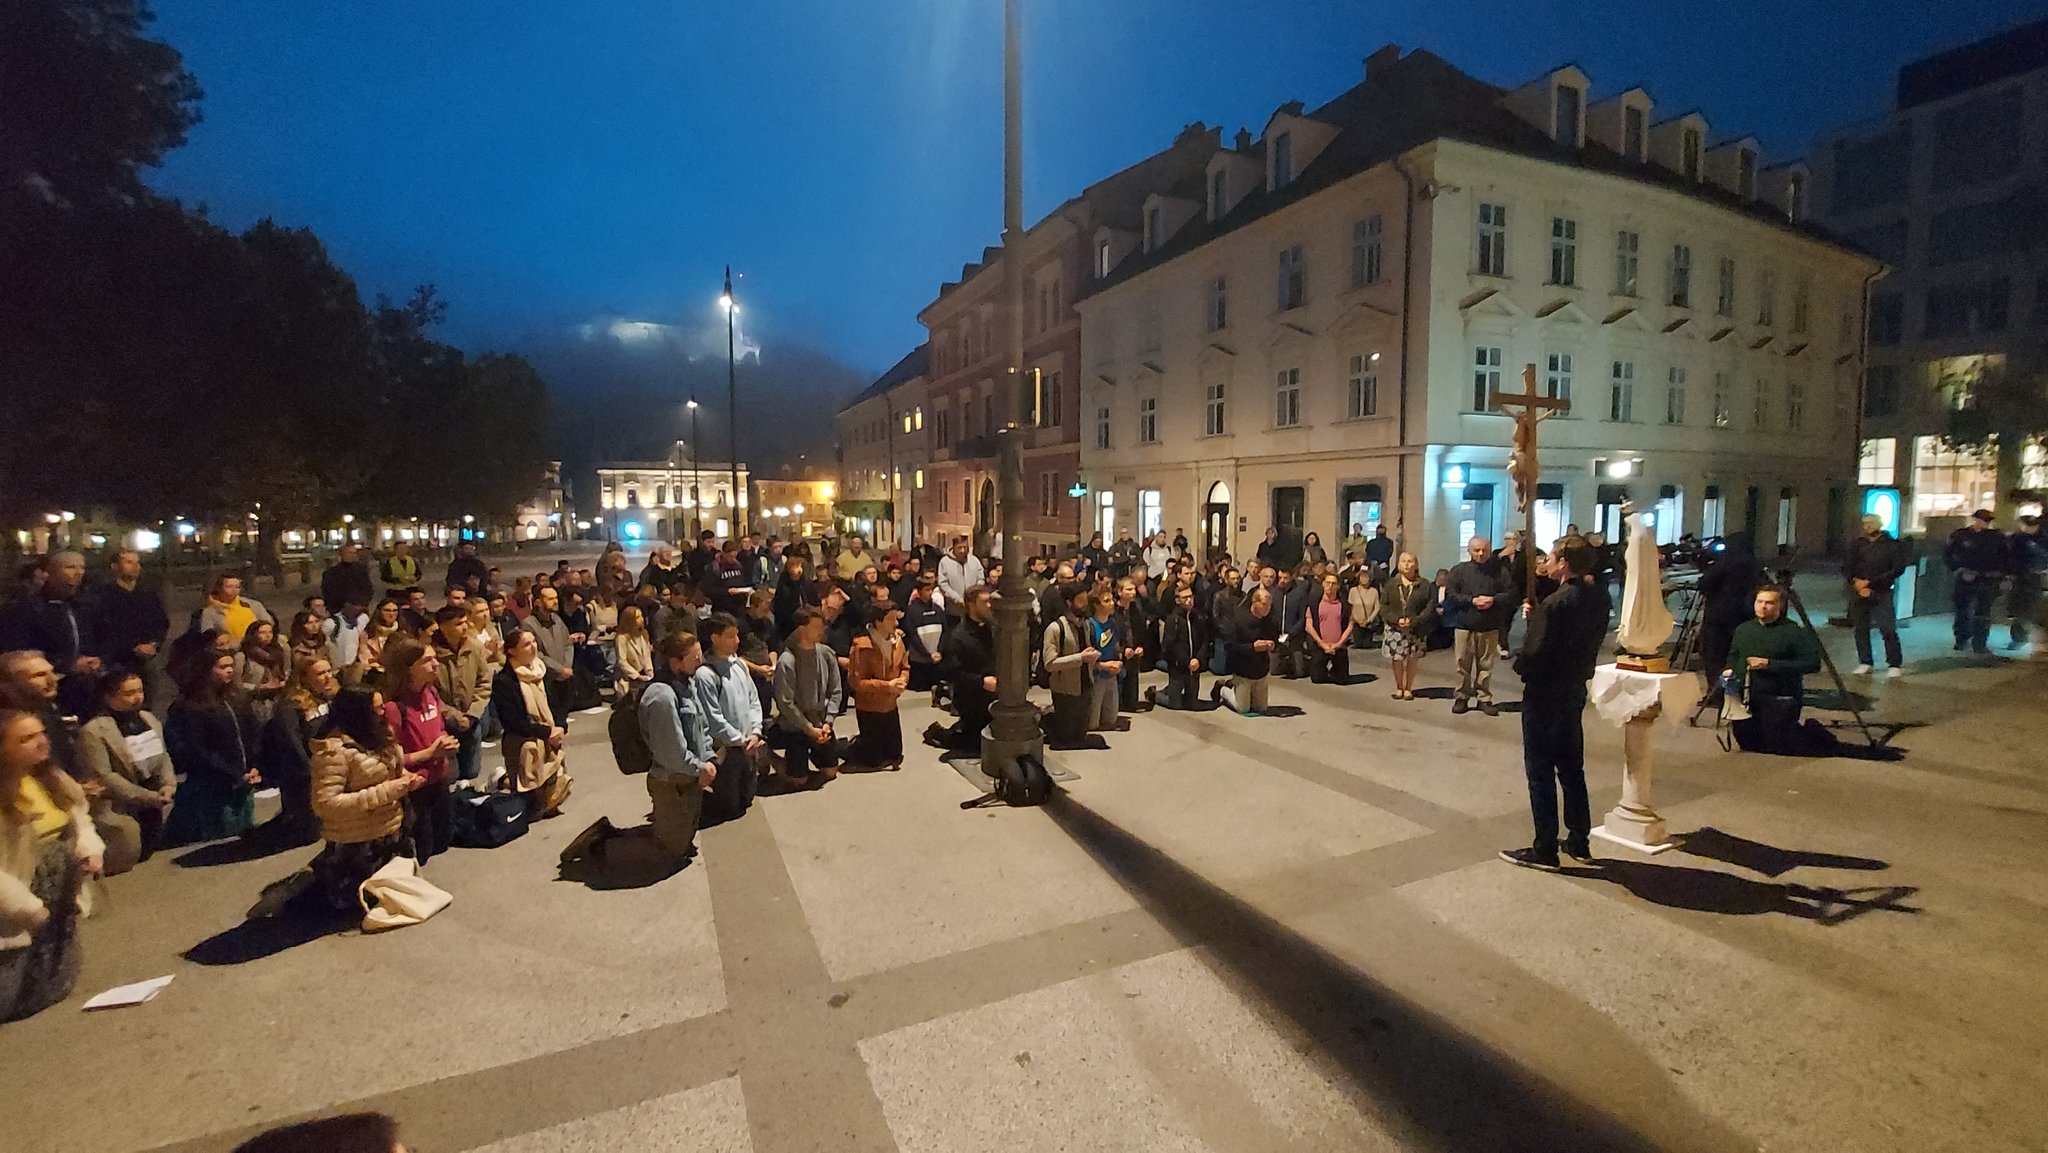 (V ŽIVO) “Dobro jutro Slovenija”: Prva javna molitev rožnega venca na Kongresnem trgu – Dogodek minil brez incidentov, razen vzklikanja enega od nasprotnikov, da gre za “srednji vek”